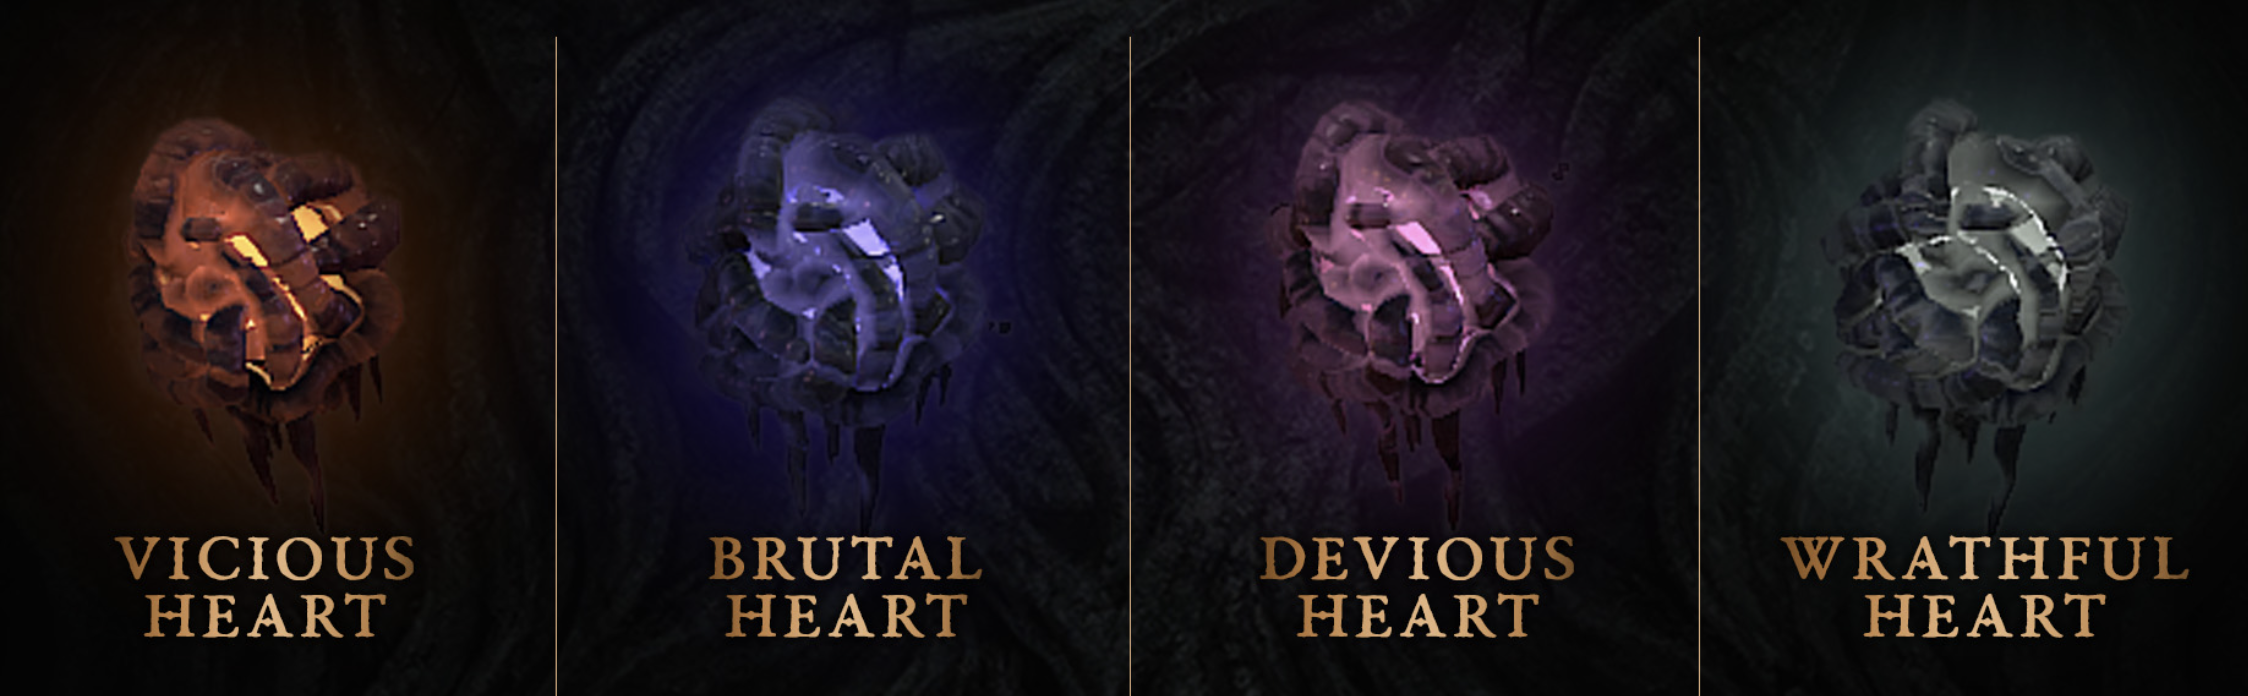 4 Types of Malignant Hearts